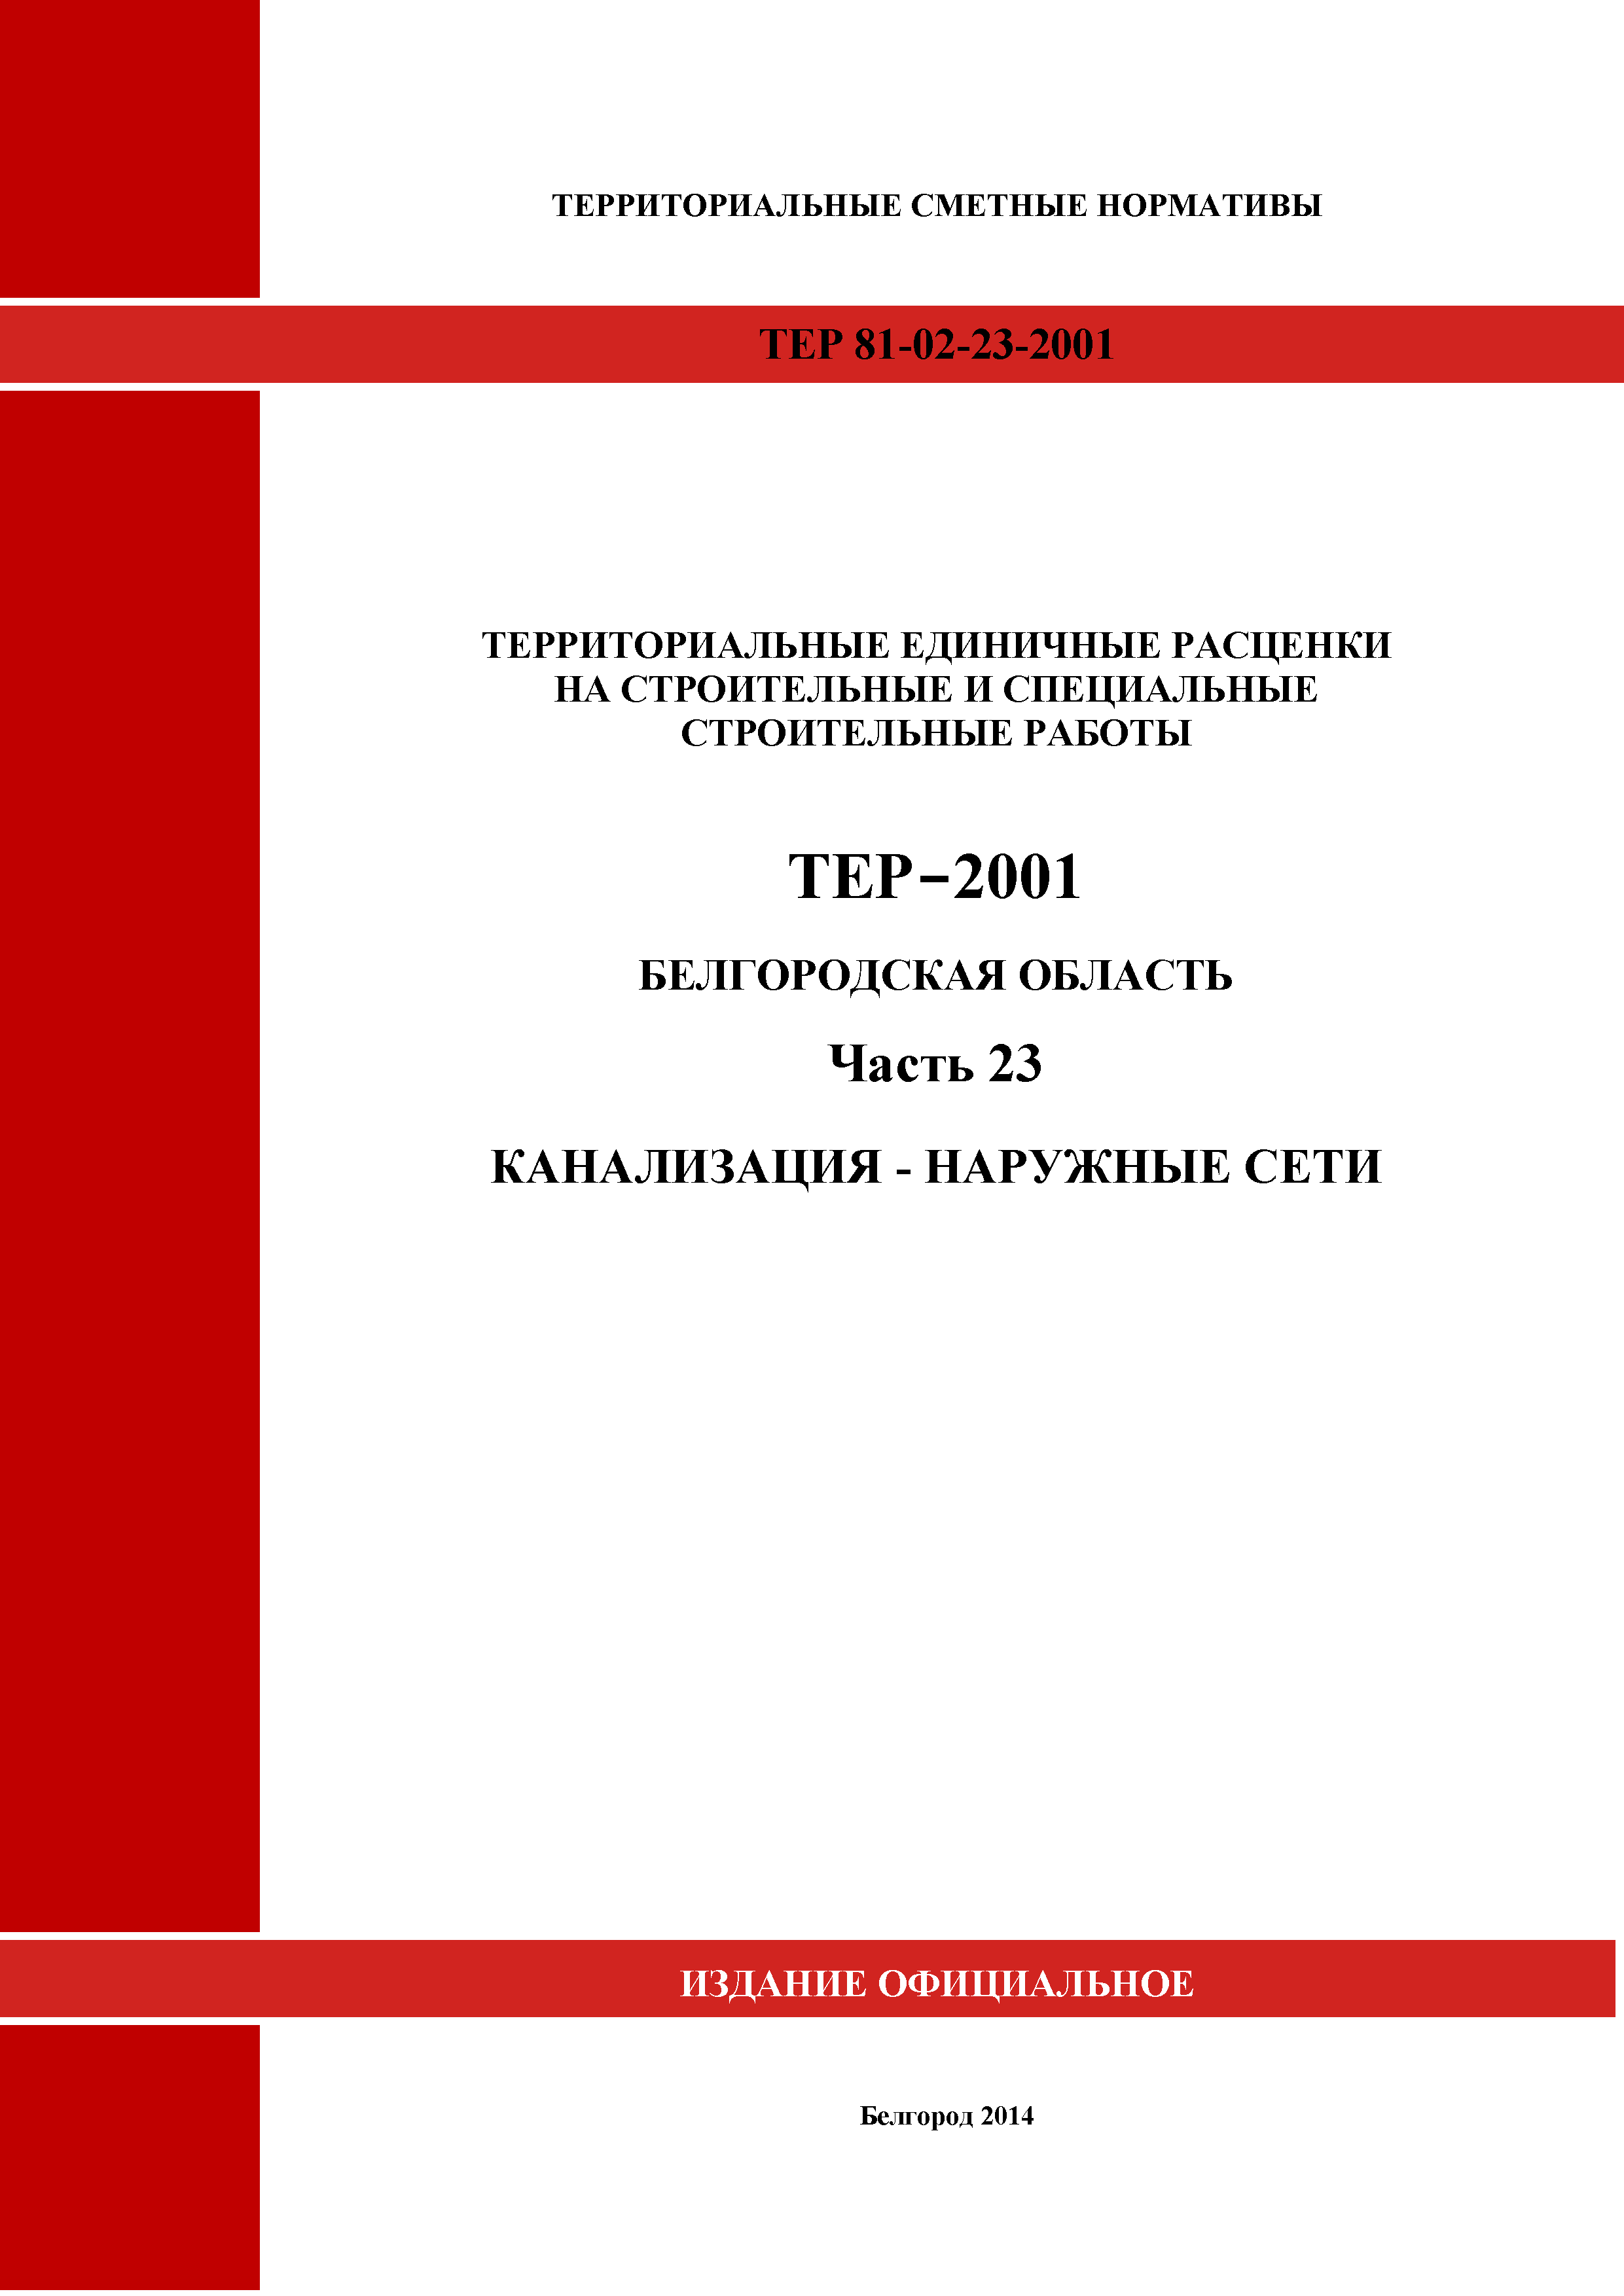 ТЕР Белгородская область 81-02-23-2001